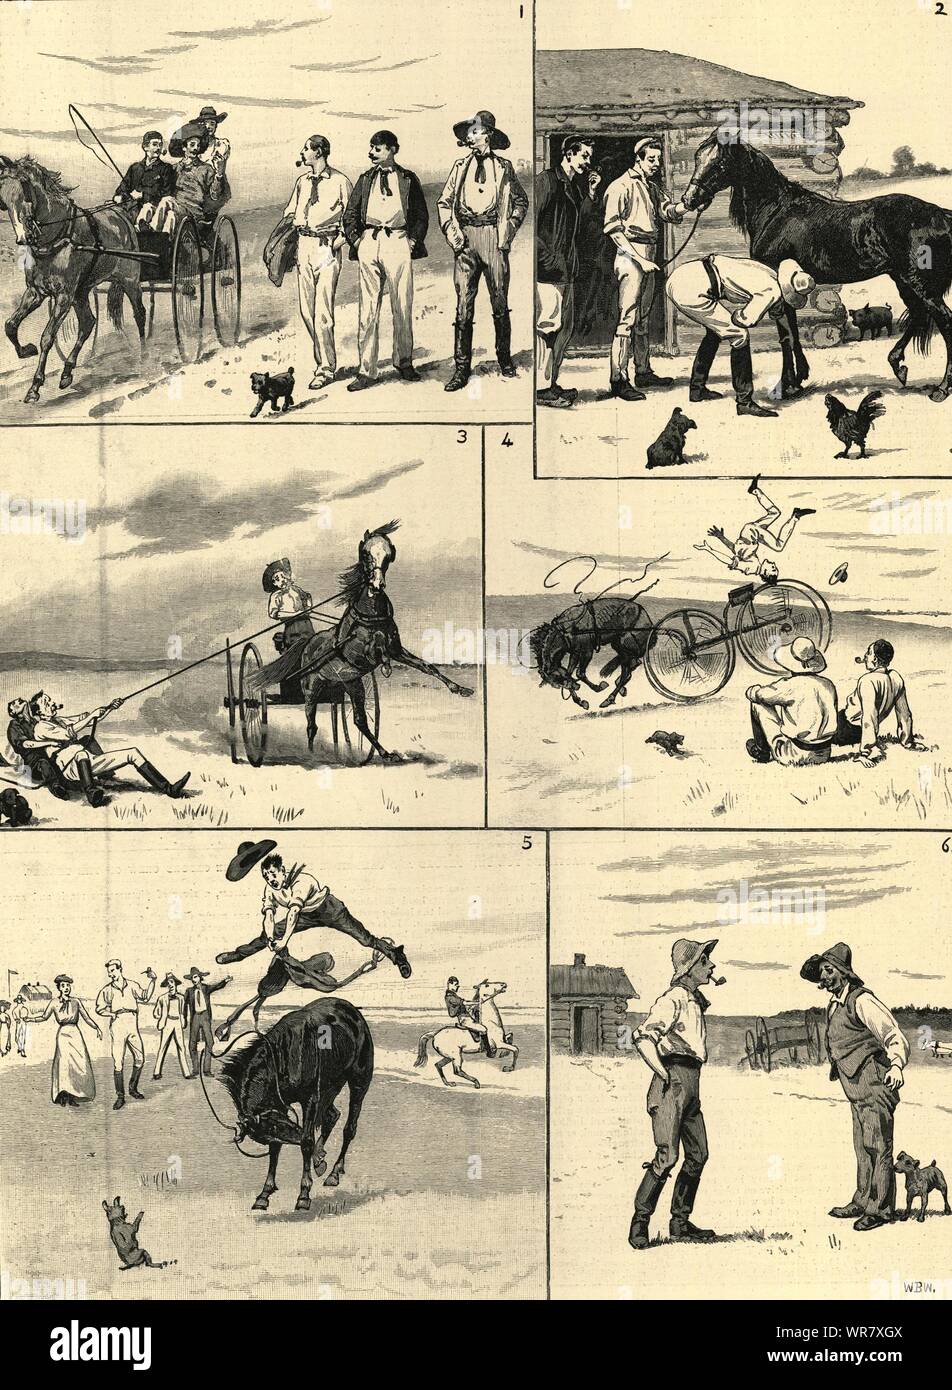 Nuestra primera oferta en horseflesh en Manitoba. Canadá. Dibujos Animados 1892 Página completa ILN Foto de stock